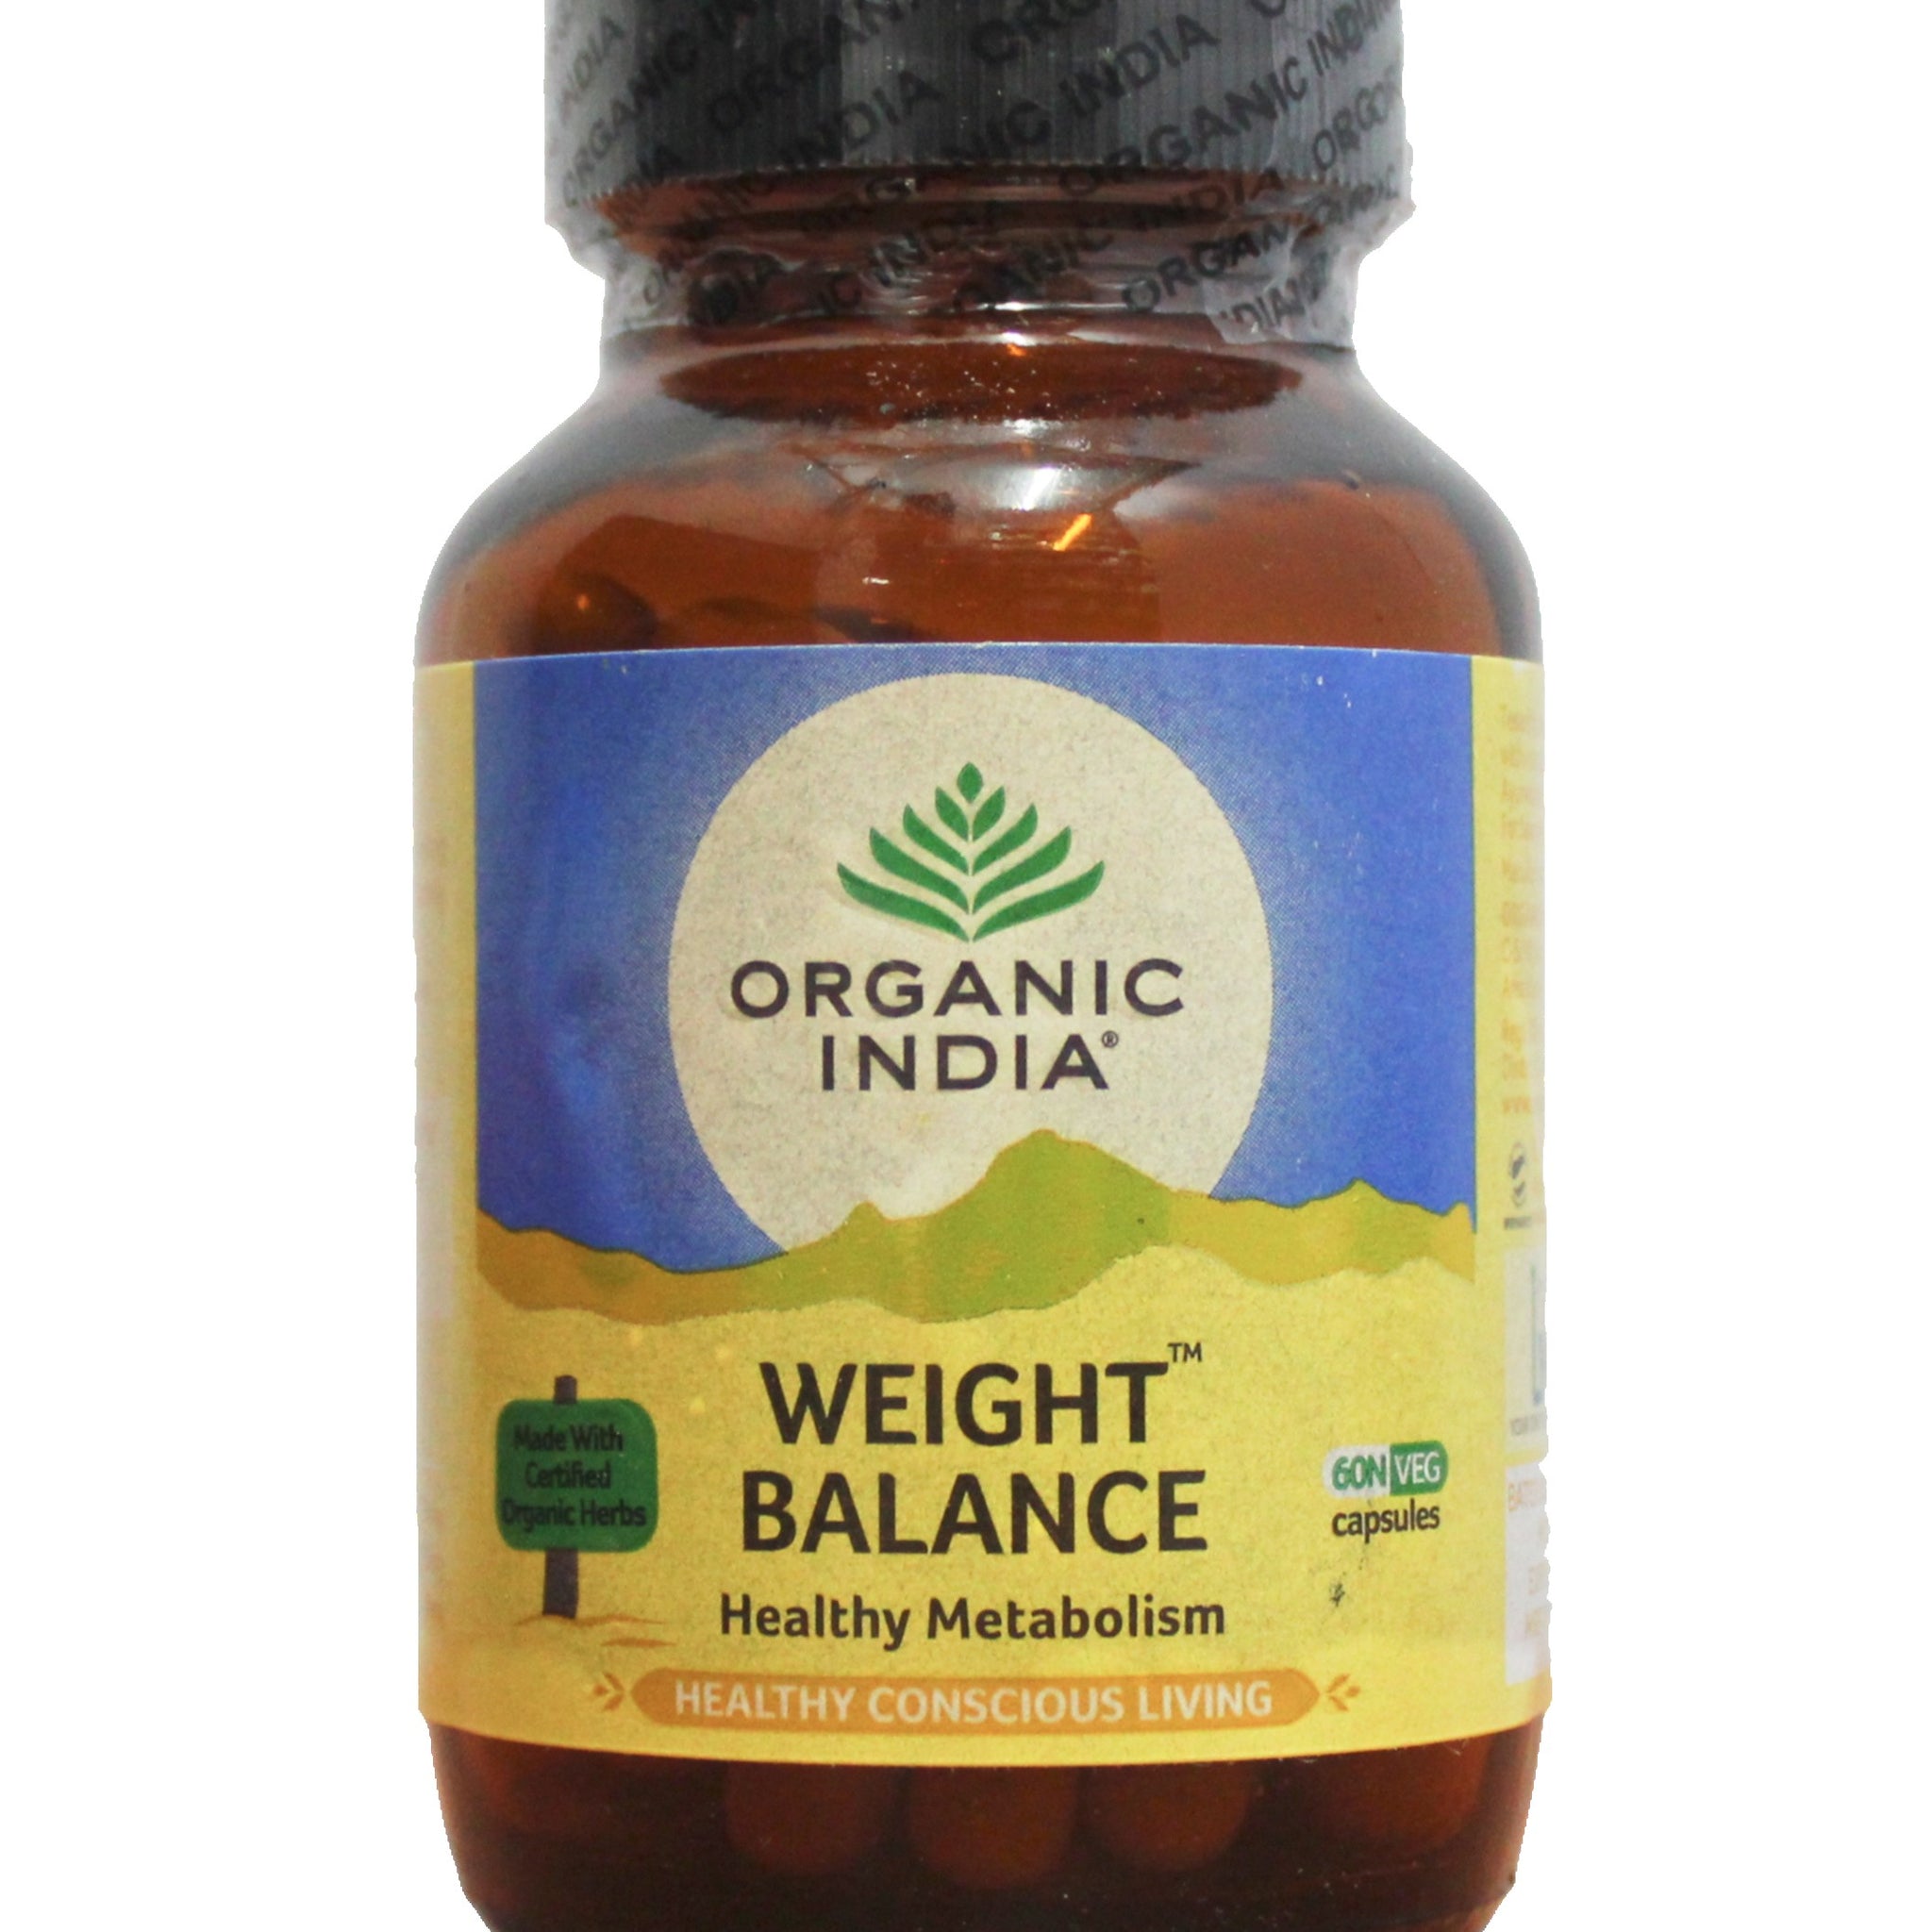 Weight balance 60capsules Organic India